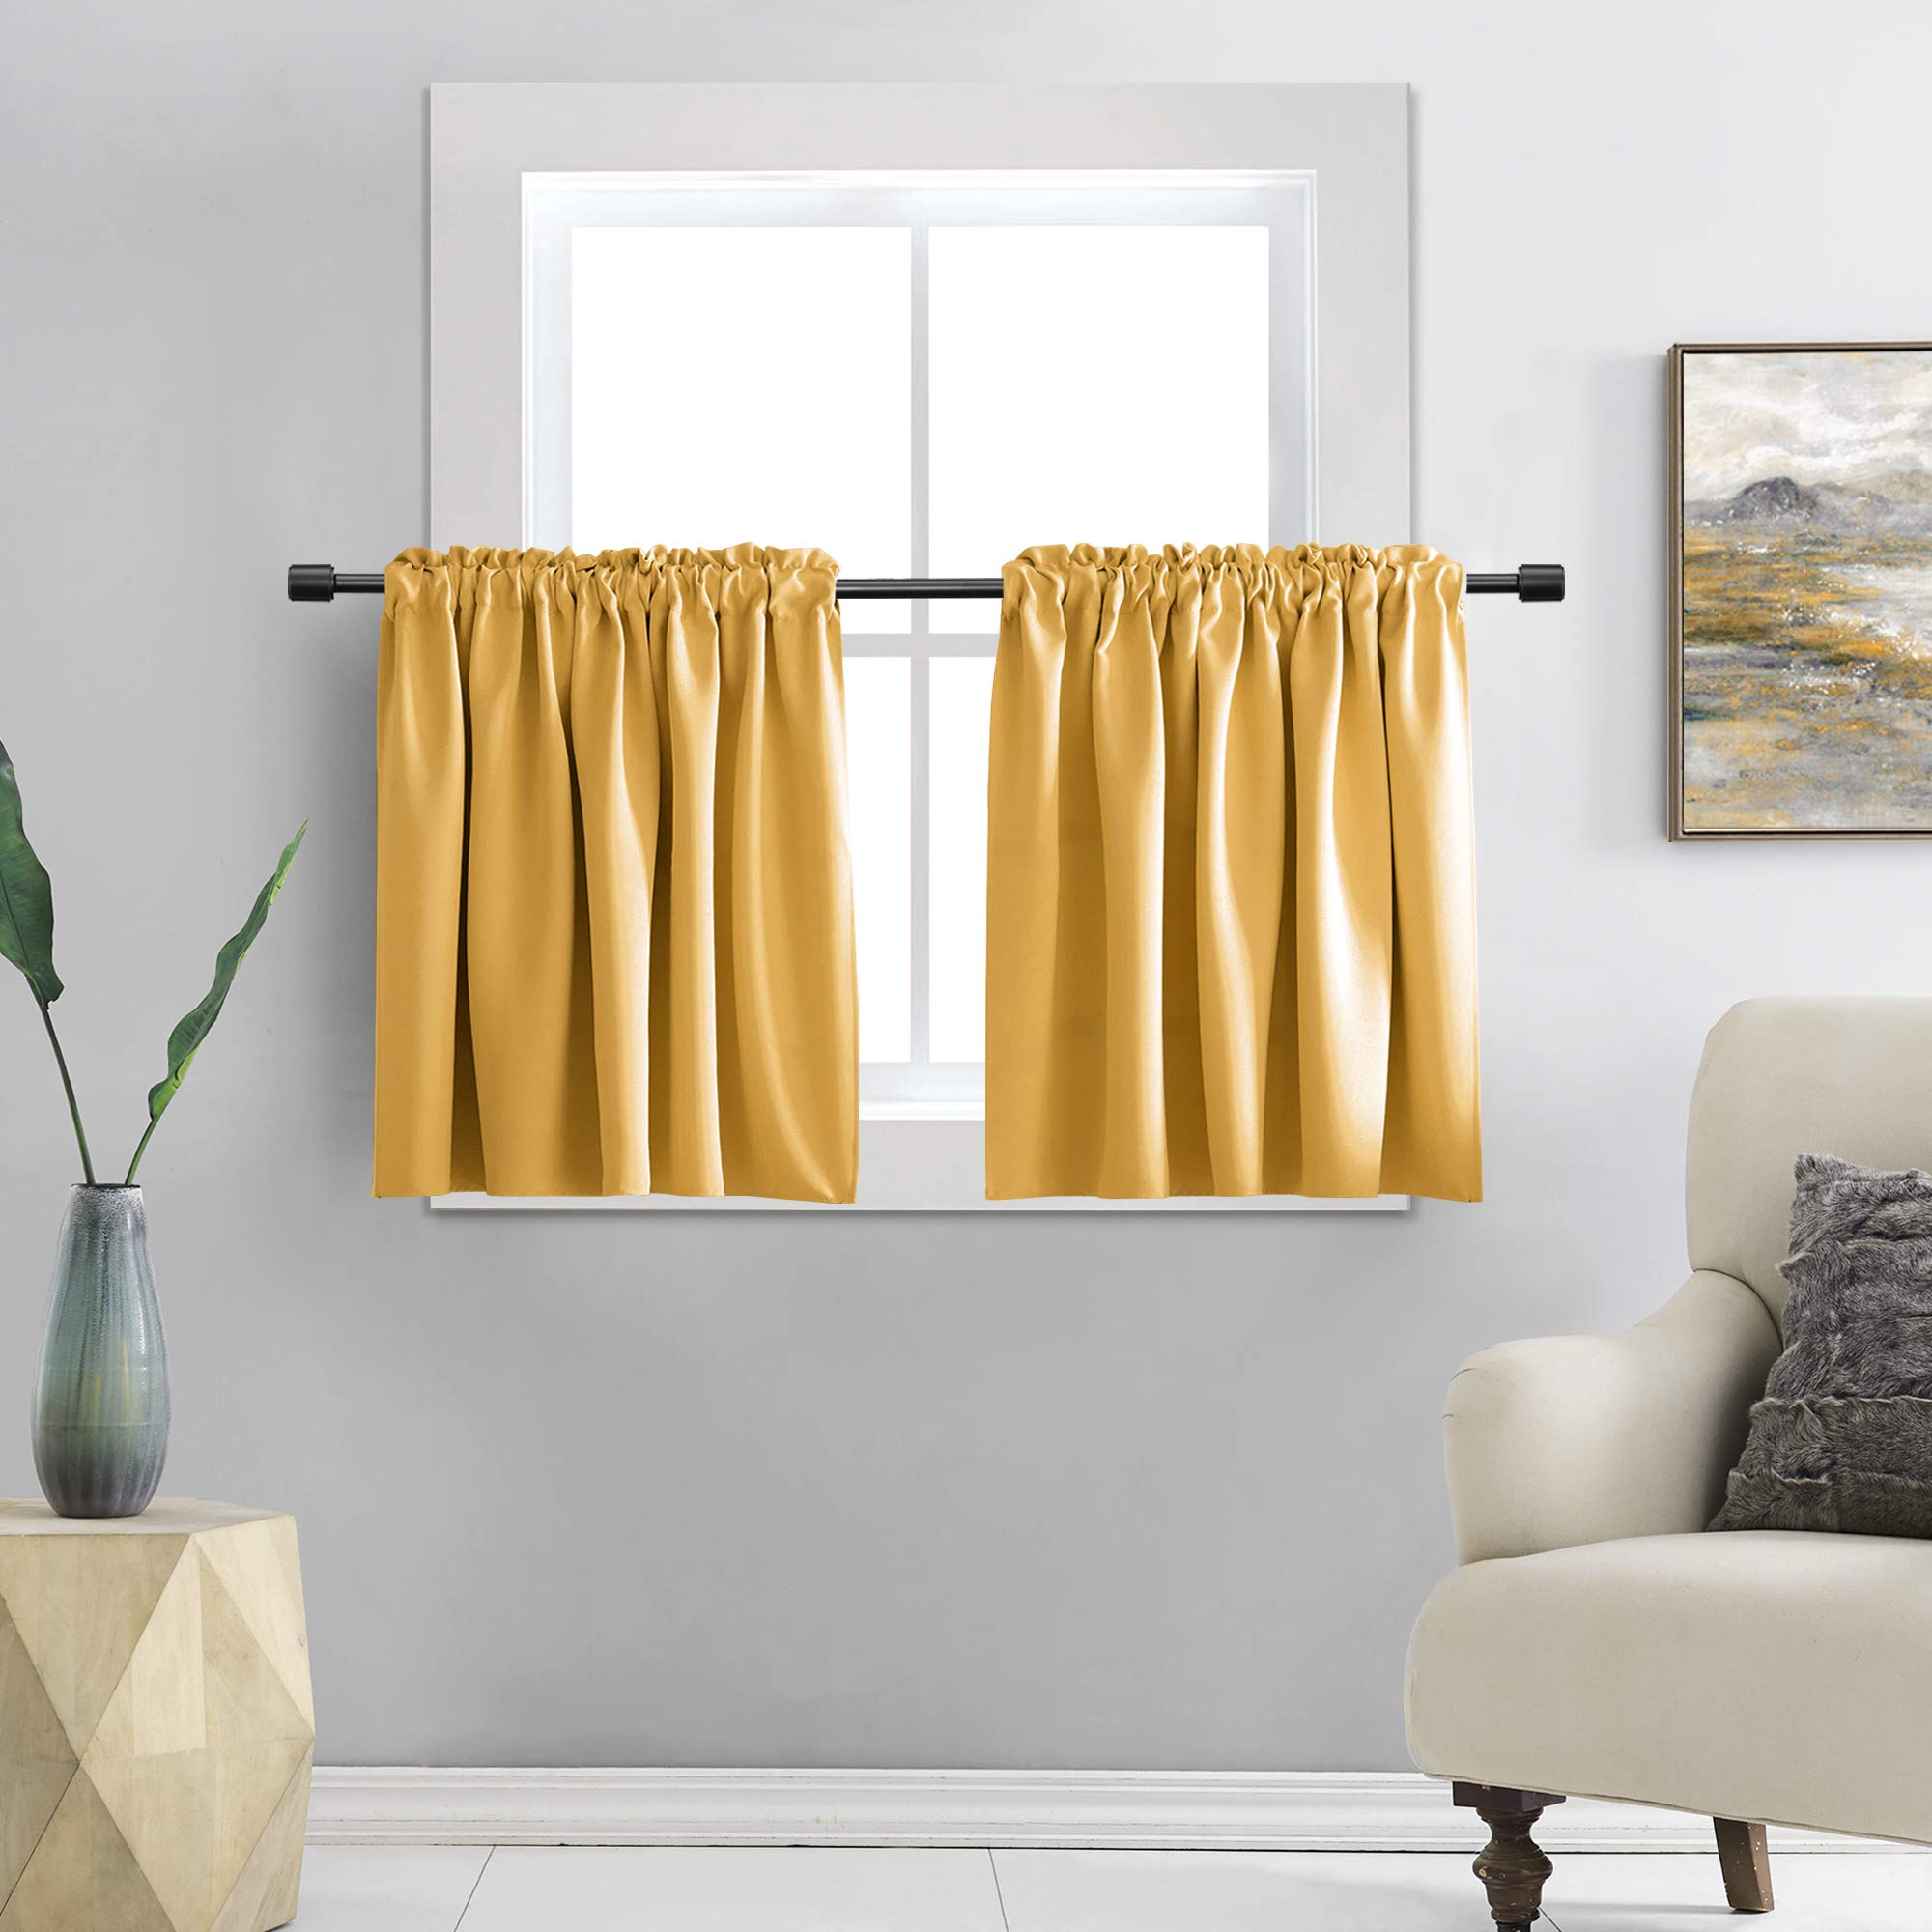 CurtainWala Curtain Ideas for Small Windows